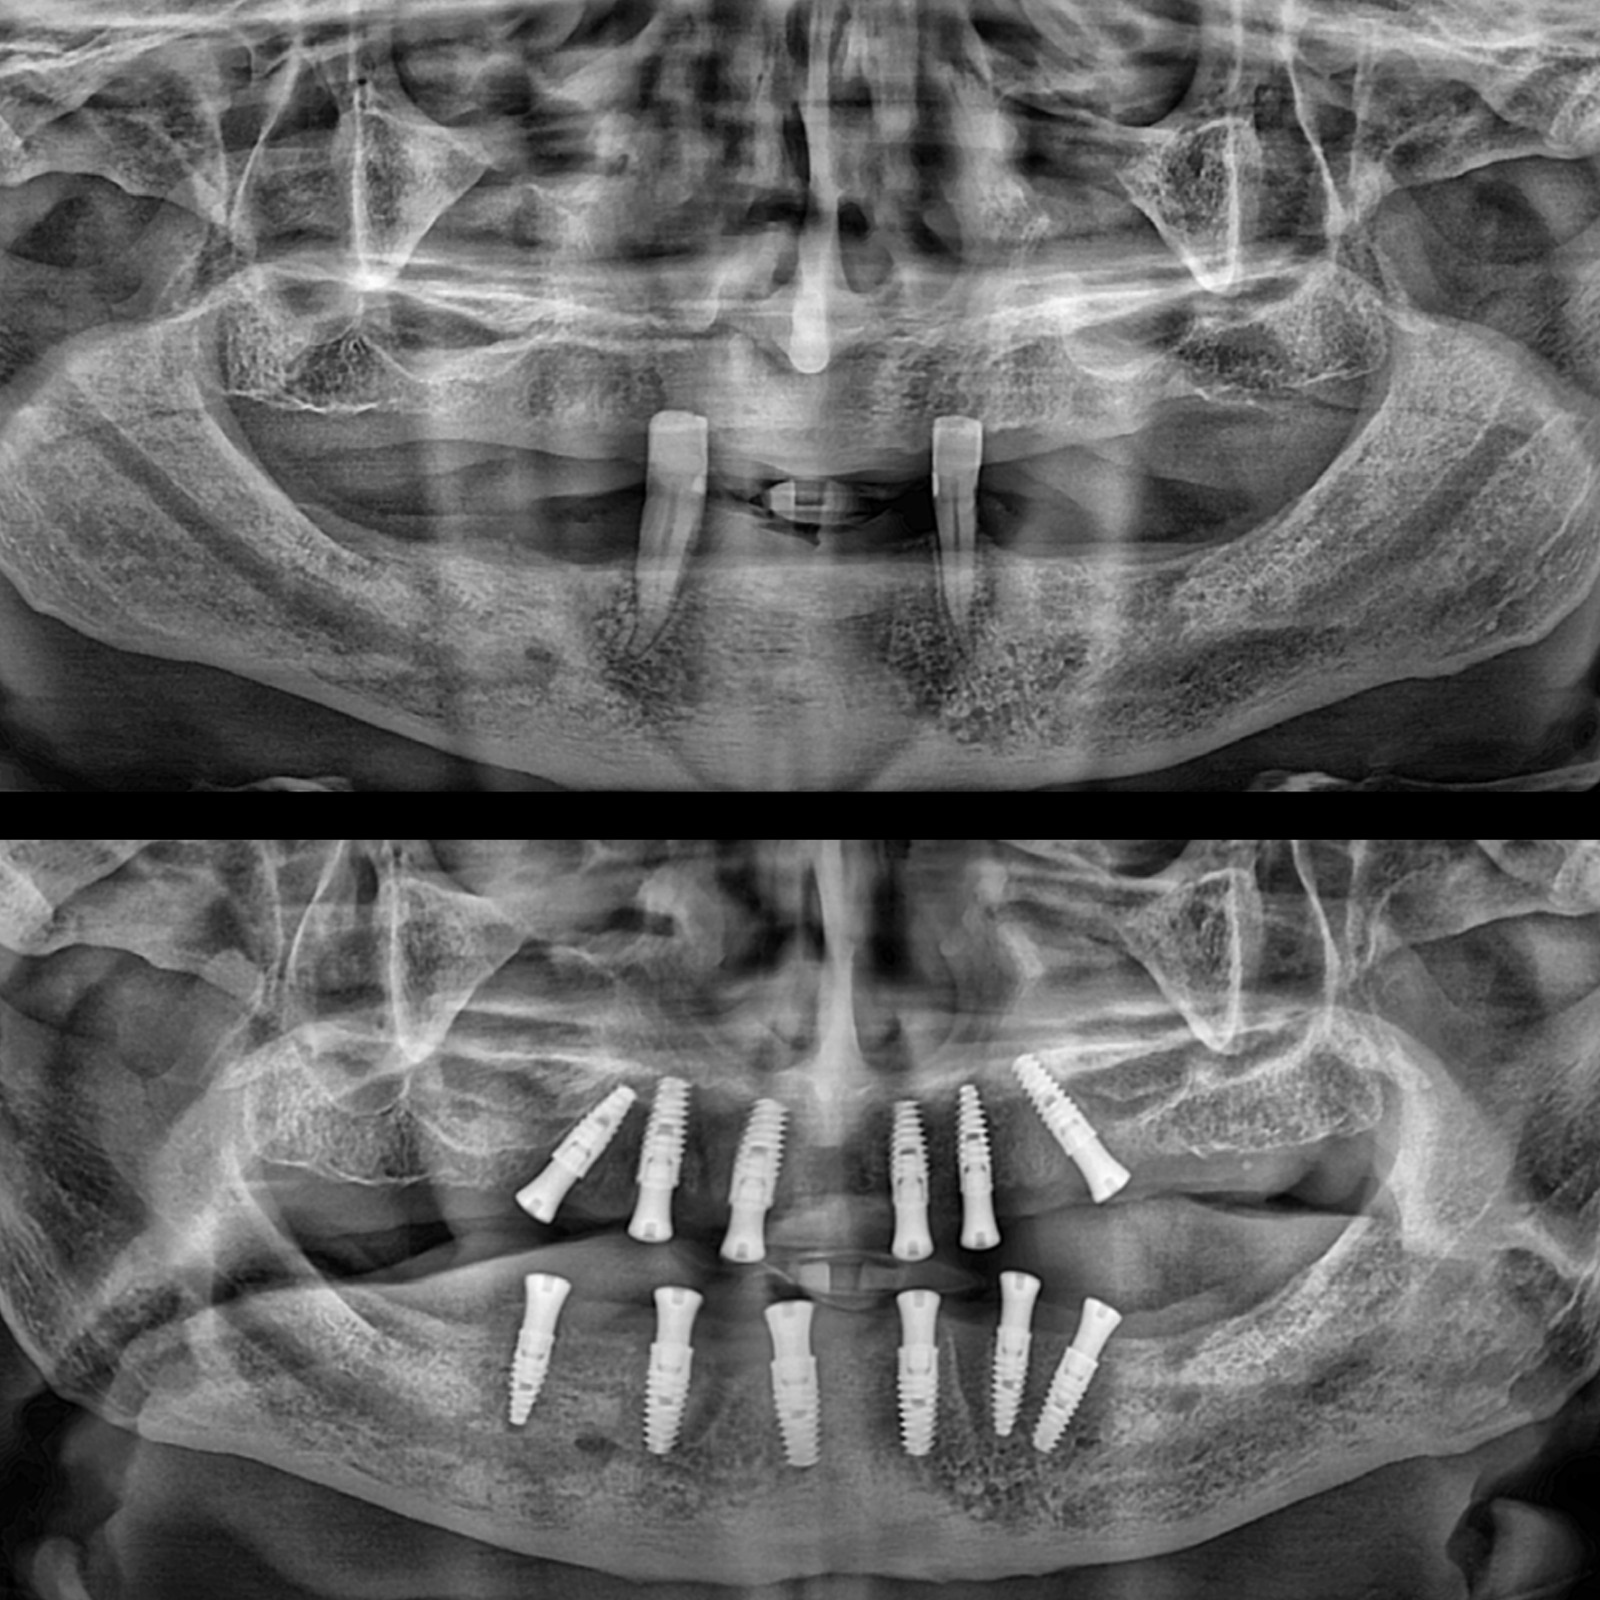 Ağız Diş ve Çene Cerrahisi (Çekimler , İmplant Uygulamarı)